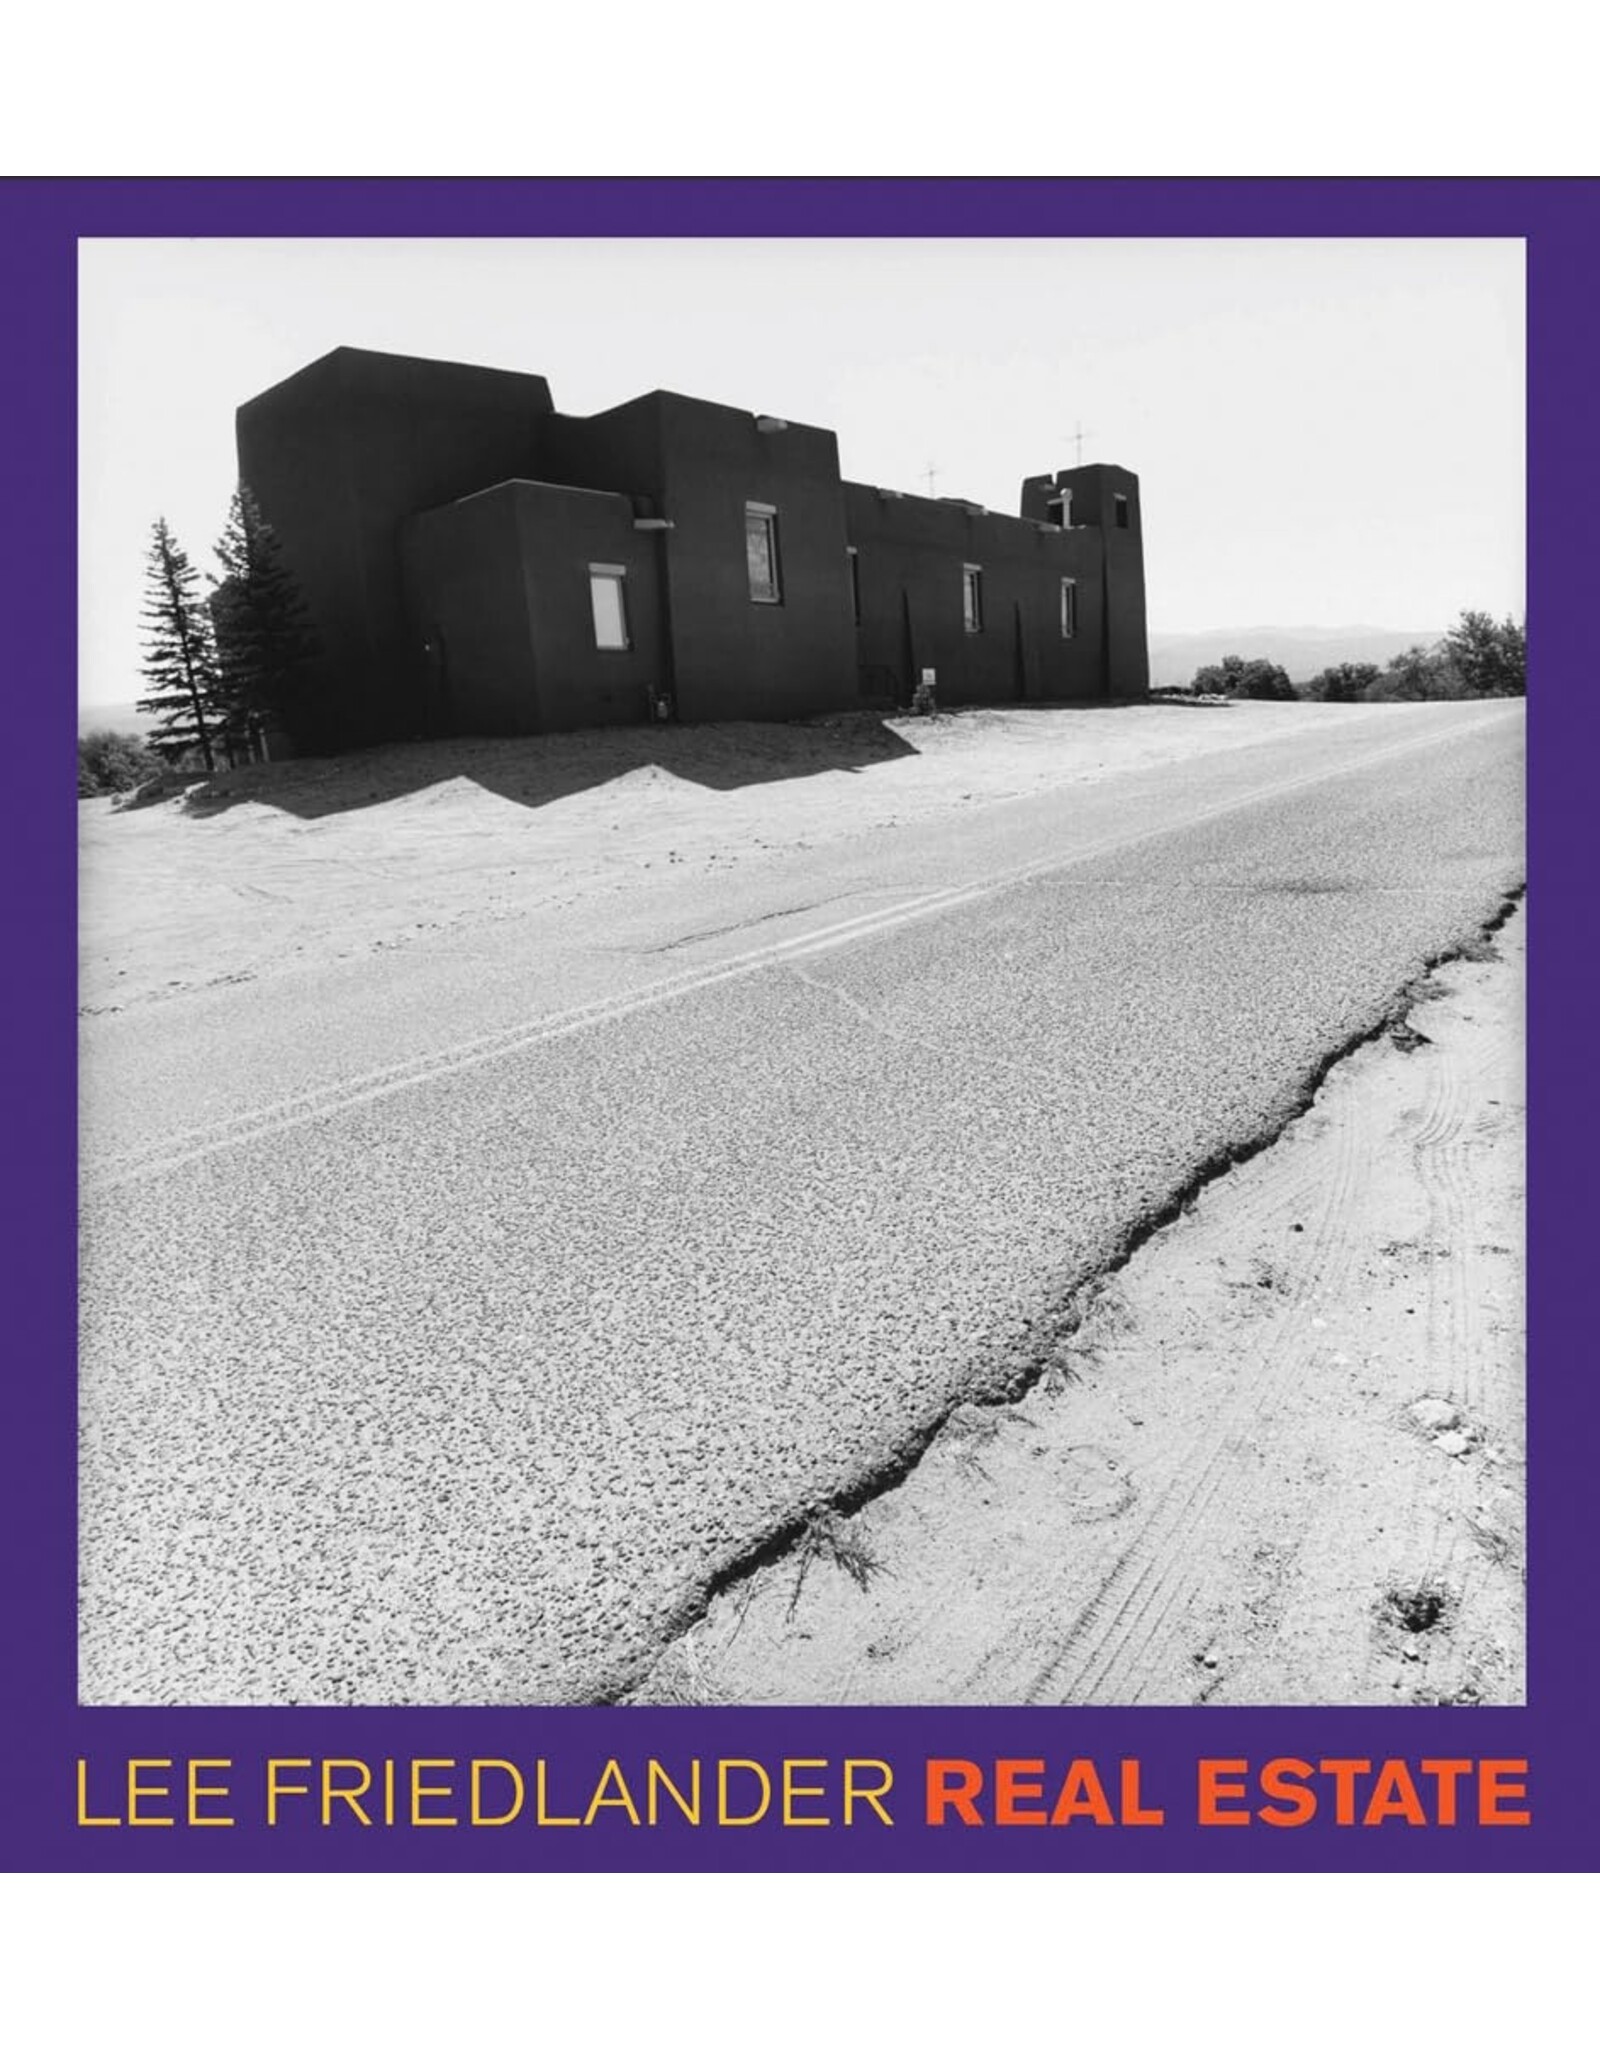 Lee Friedlander: Real Estate